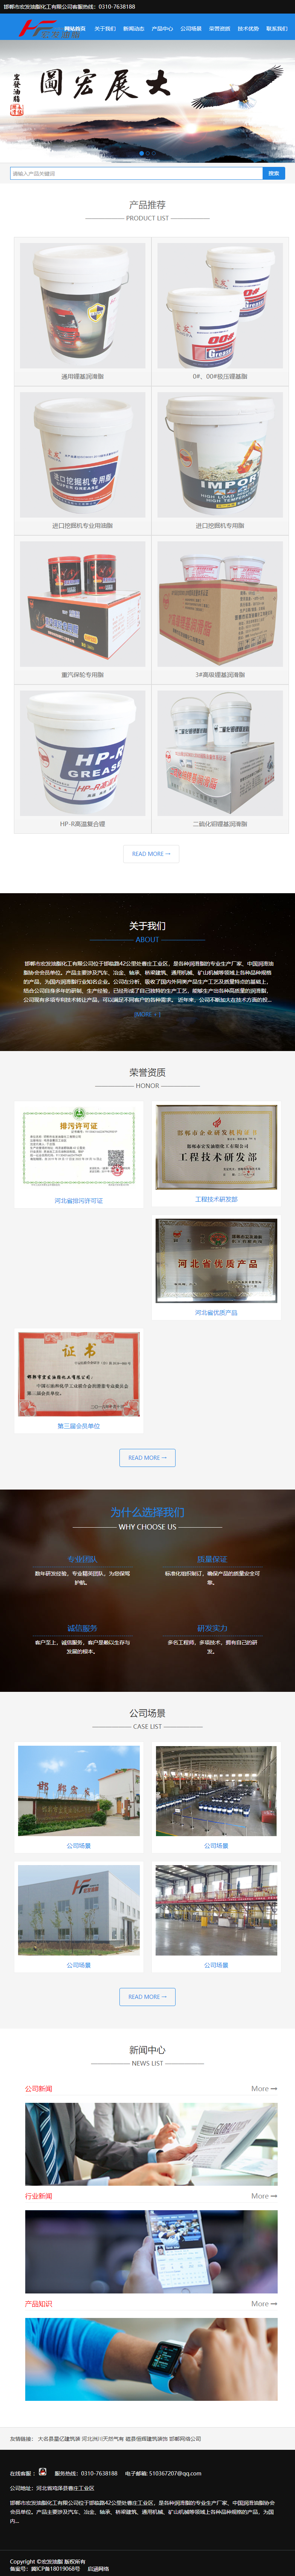 邯郸市宏发油脂化工有限公司网站案例